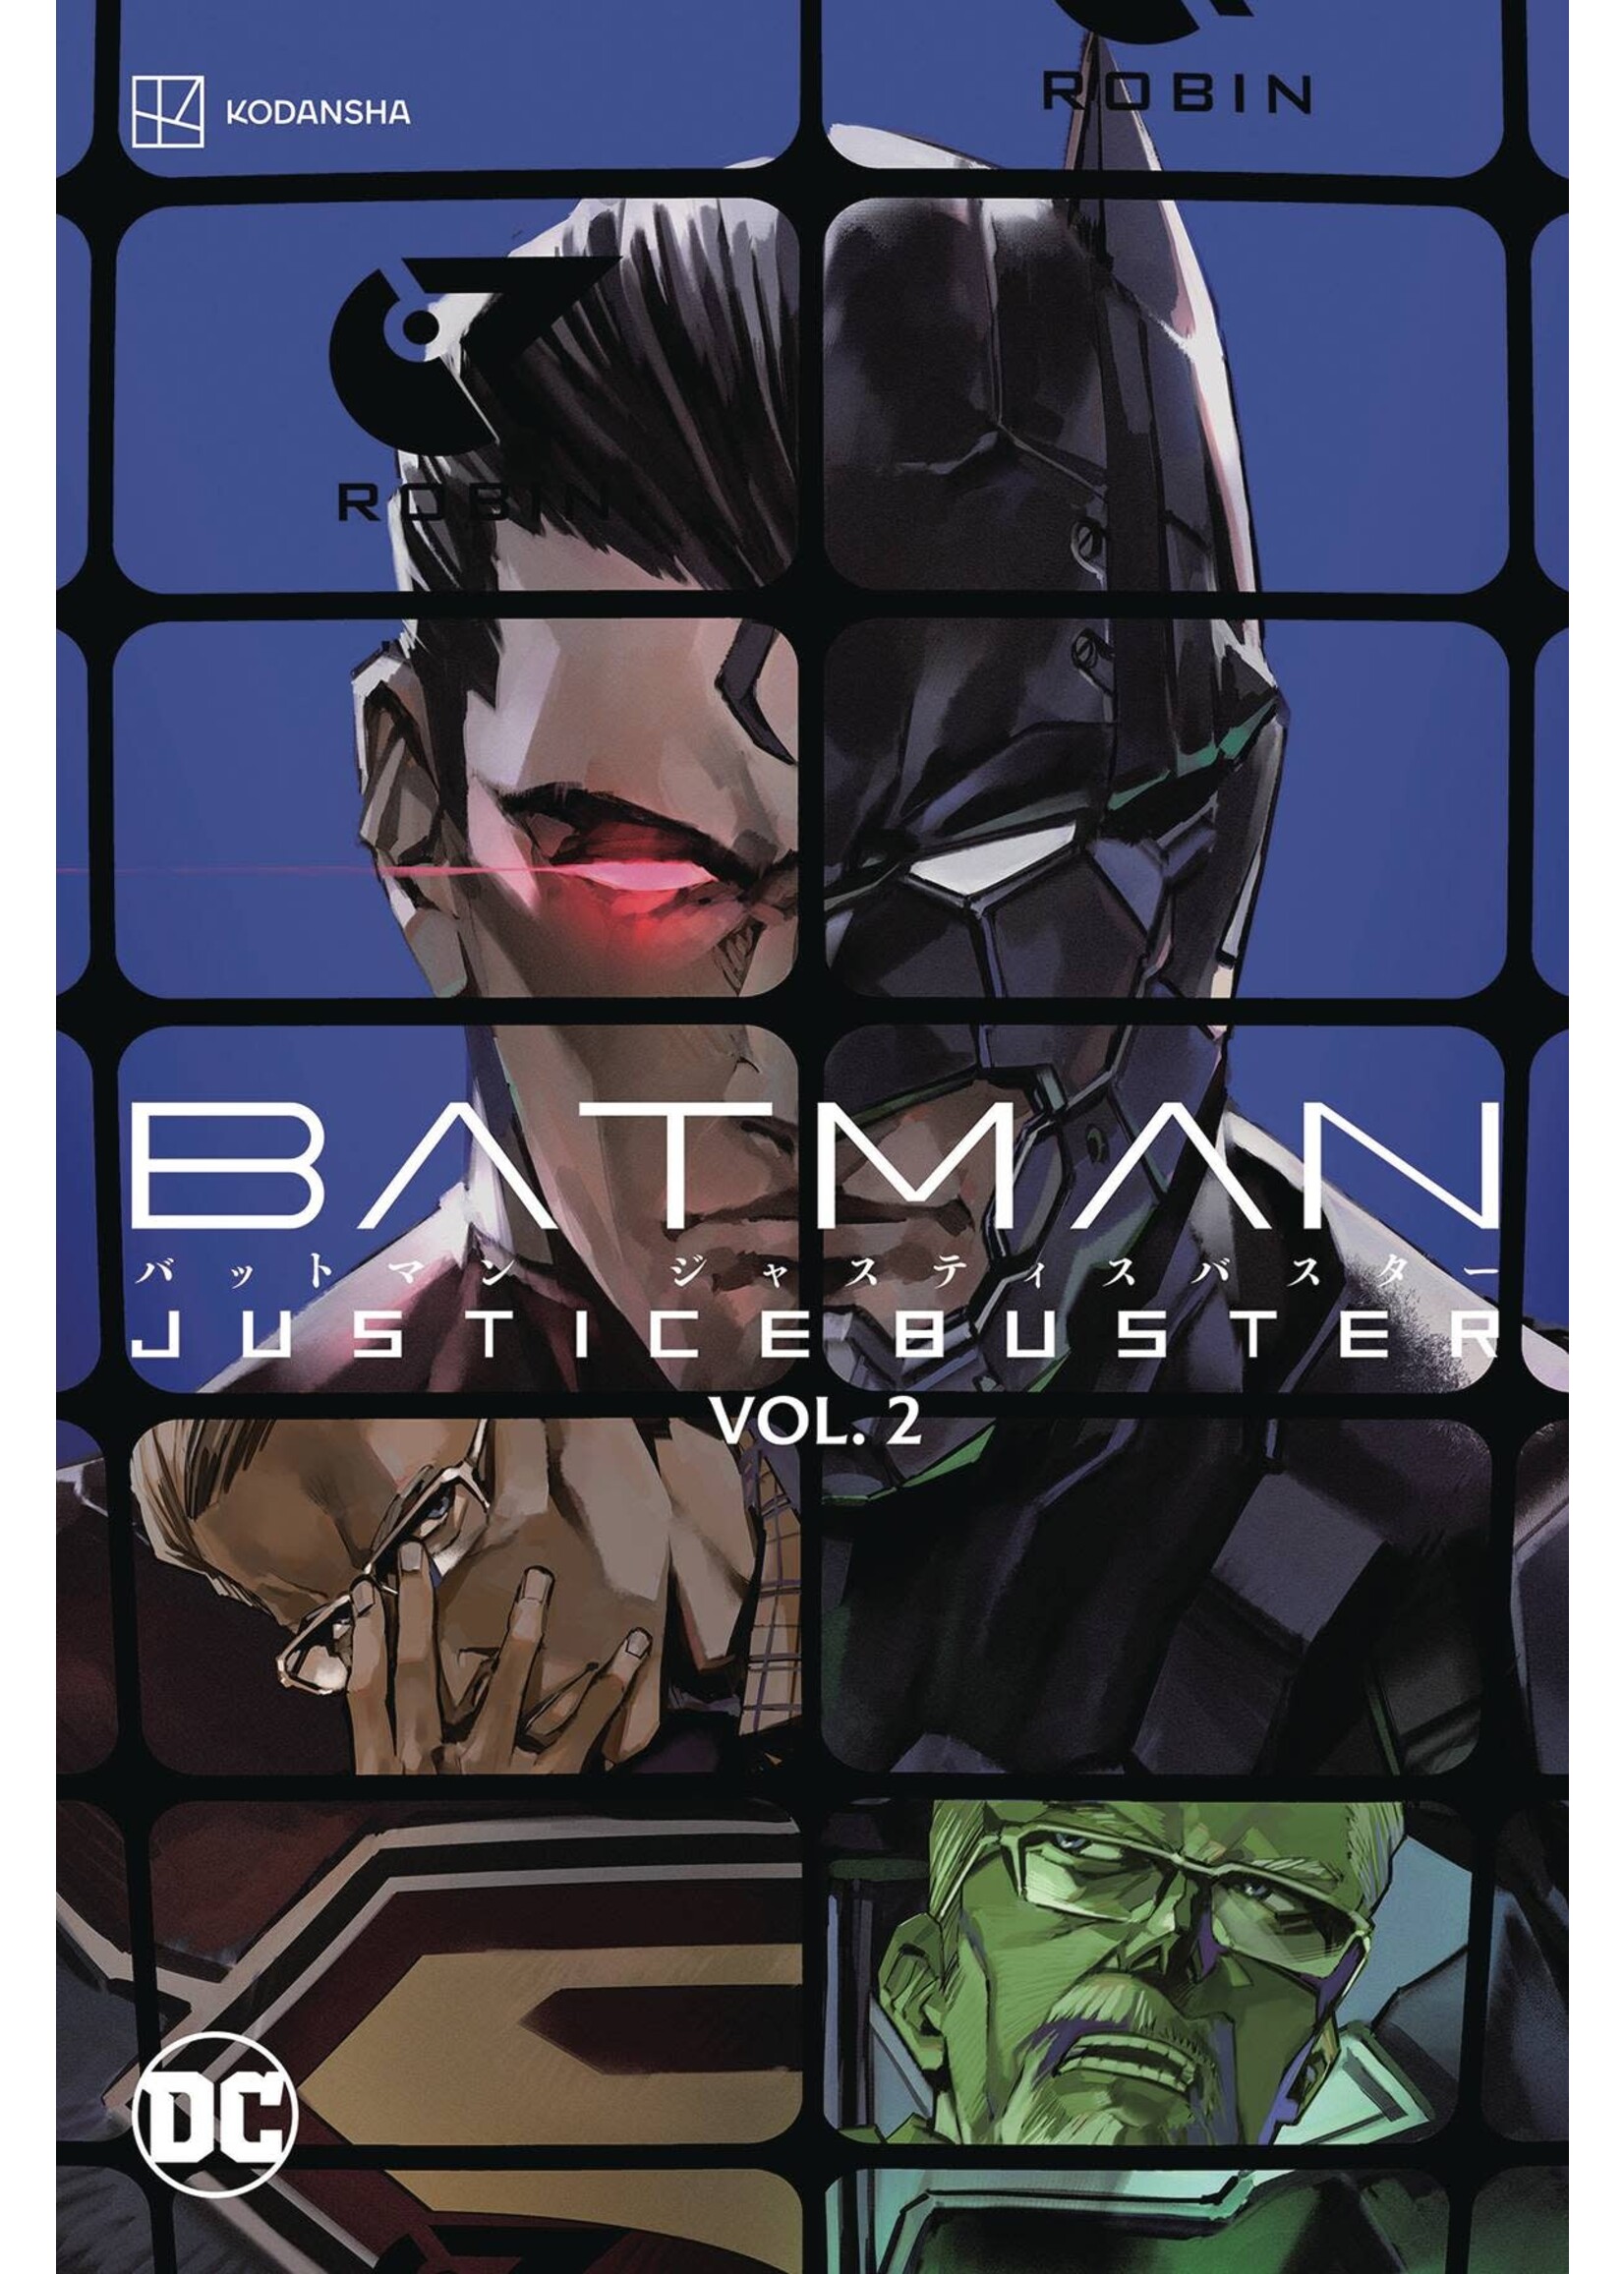 DC COMICS BATMAN JUSTICE BUSTER VOL 02